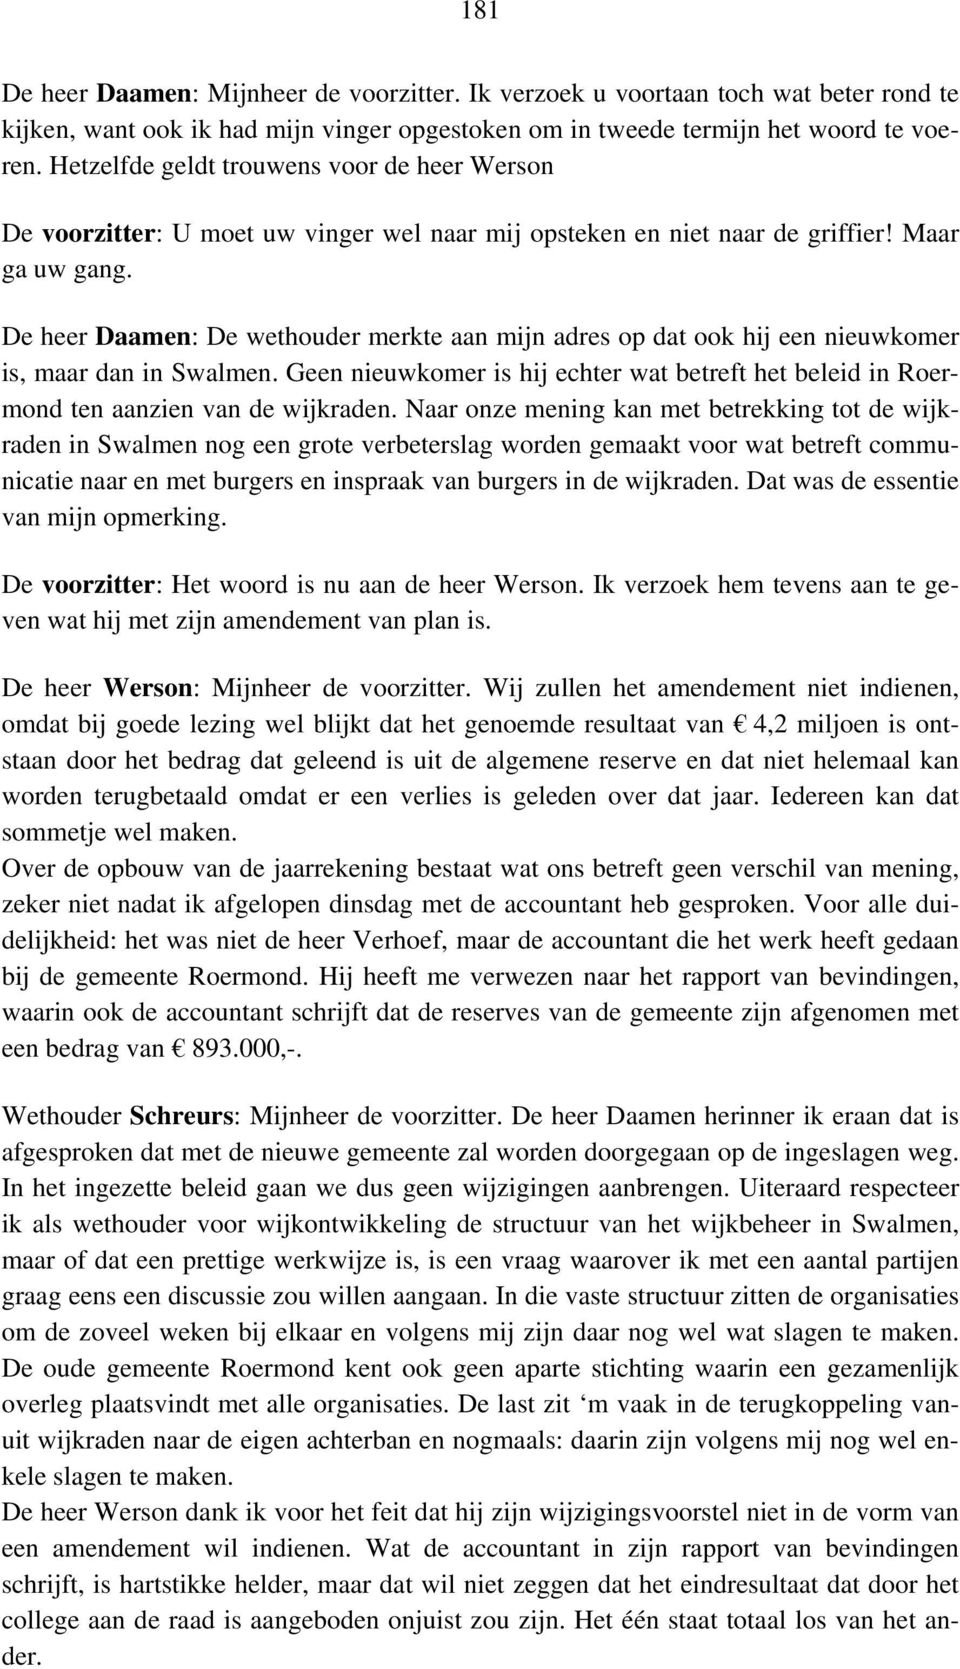 De heer Daamen: De wethouder merkte aan mijn adres op dat ook hij een nieuwkomer is, maar dan in Swalmen. Geen nieuwkomer is hij echter wat betreft het beleid in Roermond ten aanzien van de wijkraden.